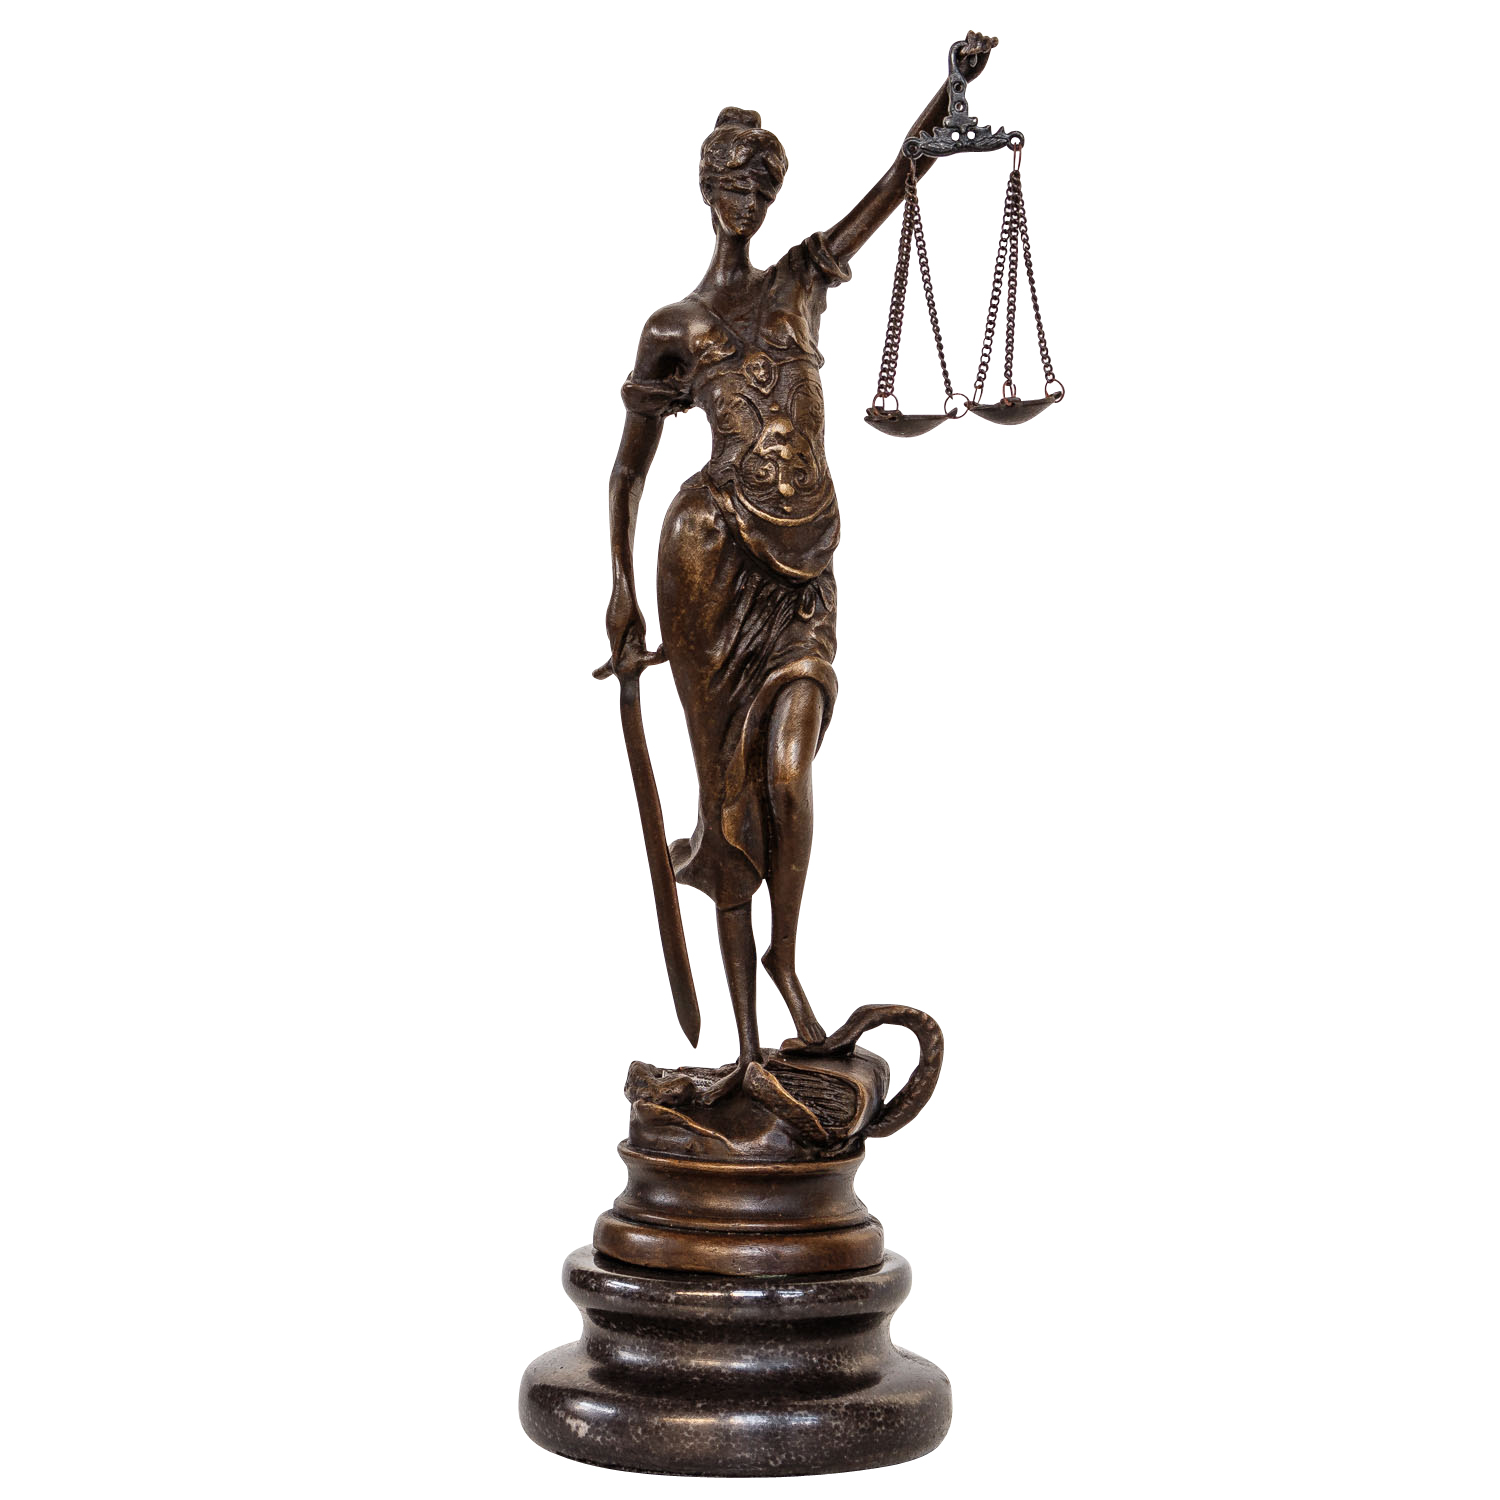 35cm Scultura in bronzo giustizia justizia Statua Bronzo personaggio scultura antico-stile 